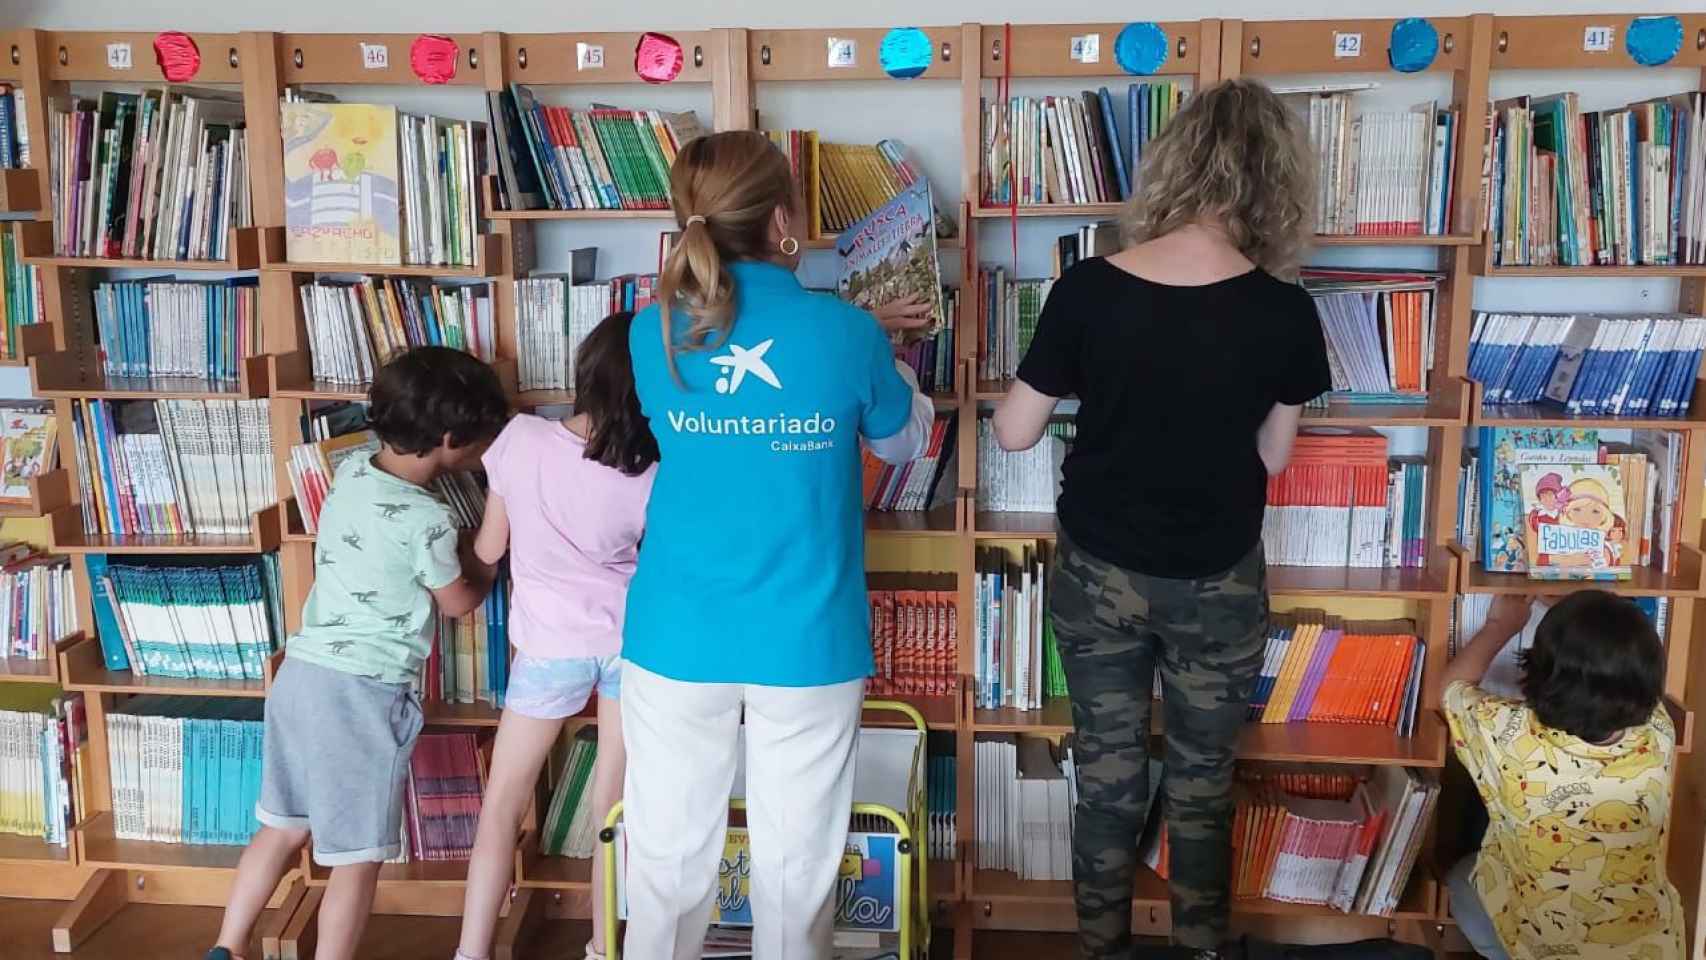 'Acompañamiento en la lectura’ es un programa de Voluntariado que CaixaBank se desarrolla en múltiples ciudades de España